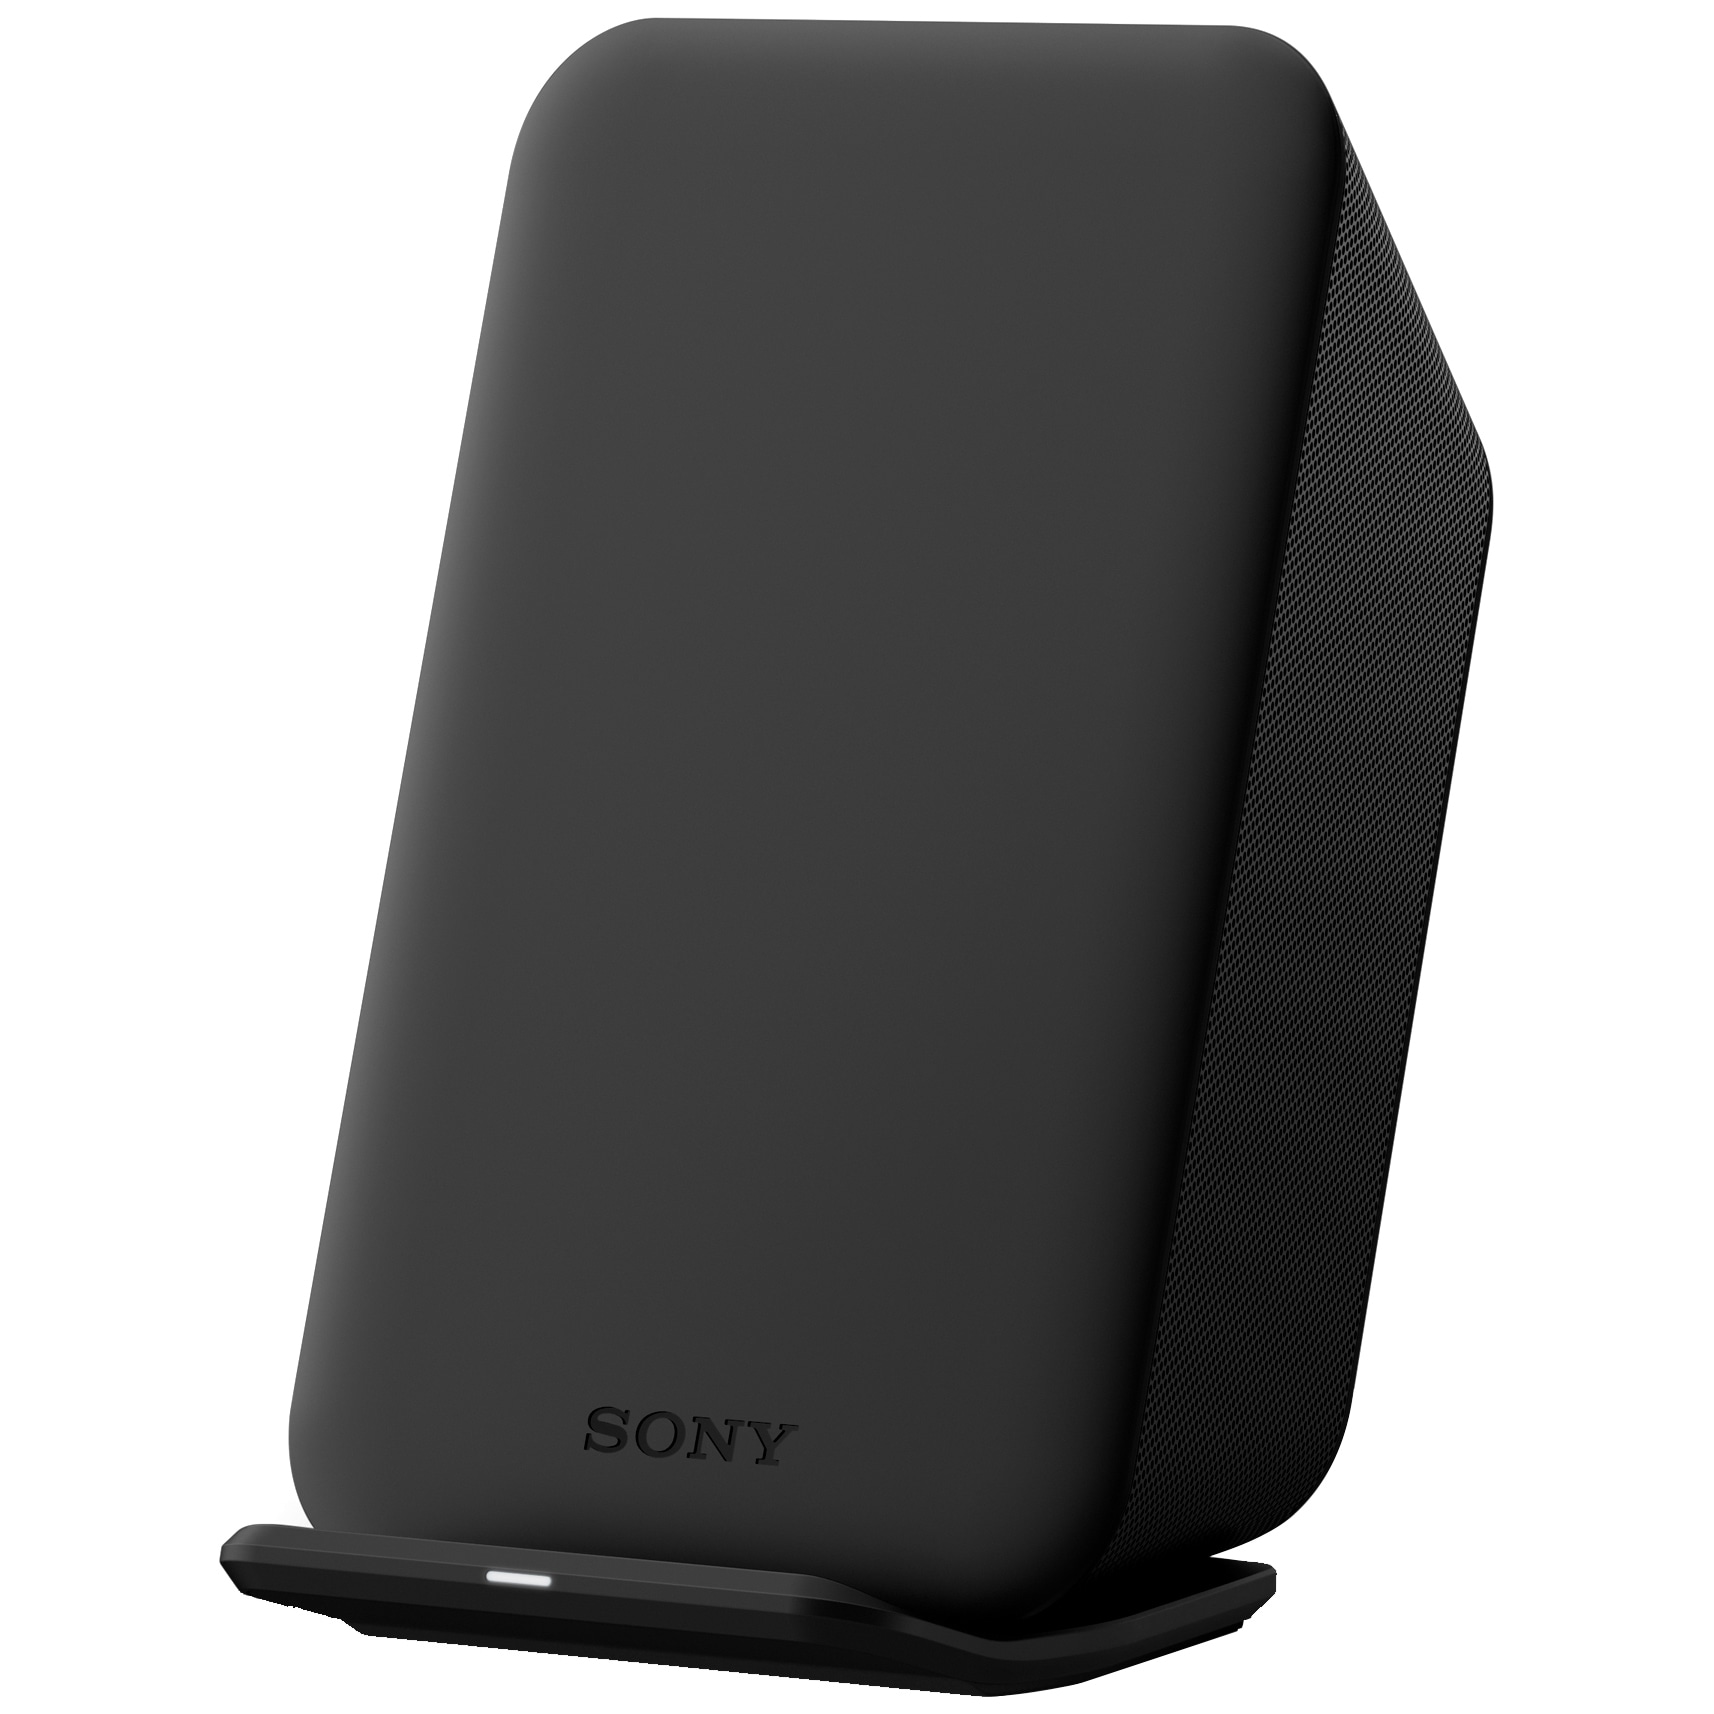 Sony WCH20 trådløs lader - Ladere og kabler til mobil - Elkjøp